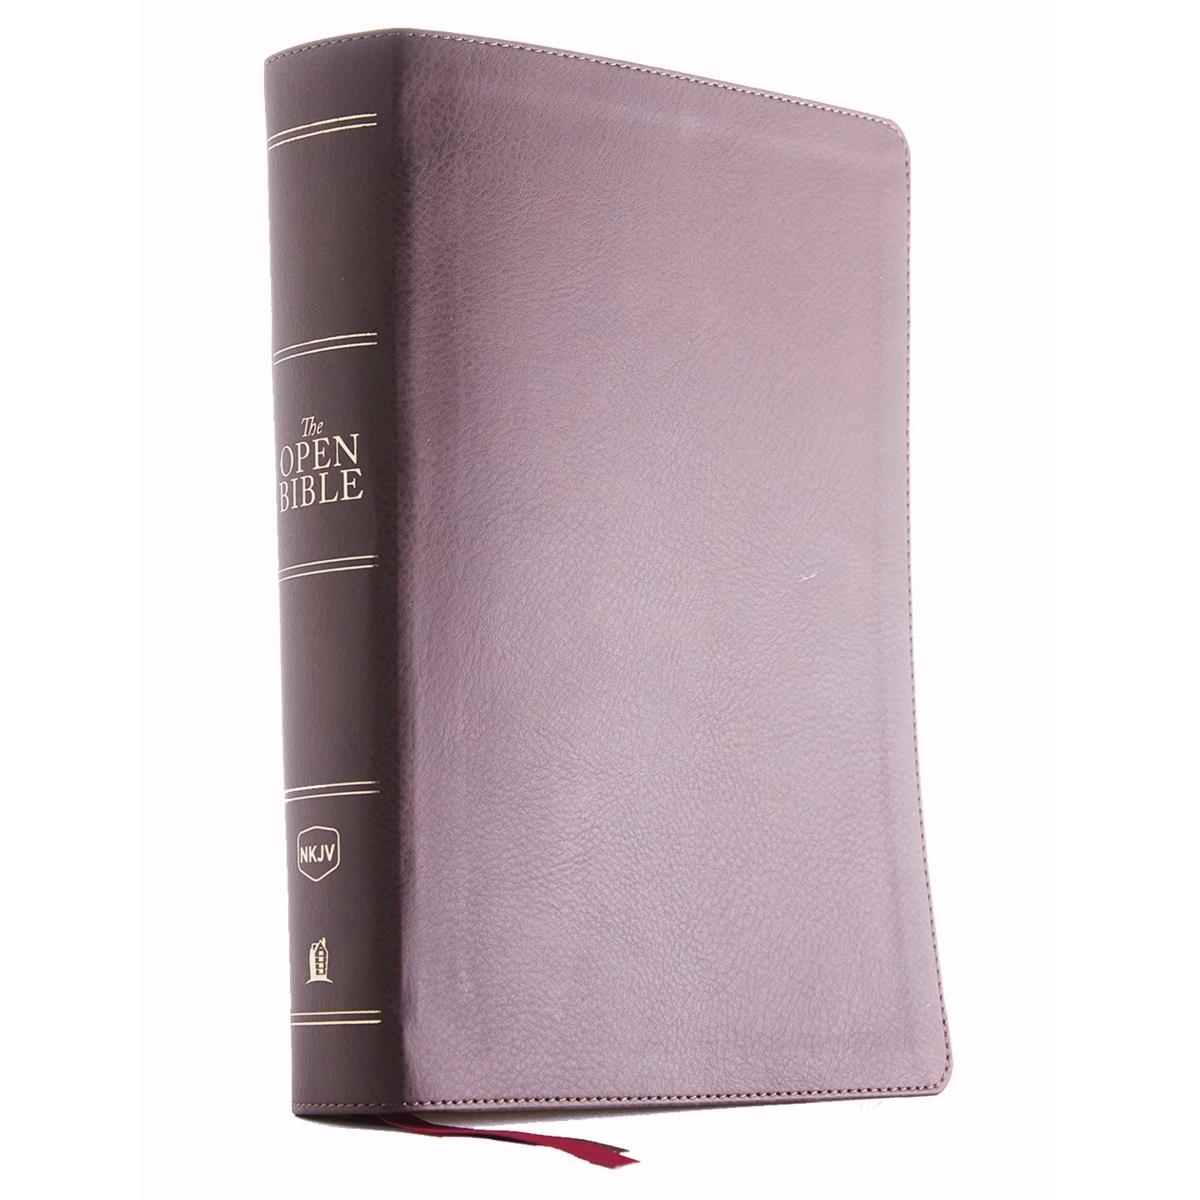 Nelson Bibles 171249